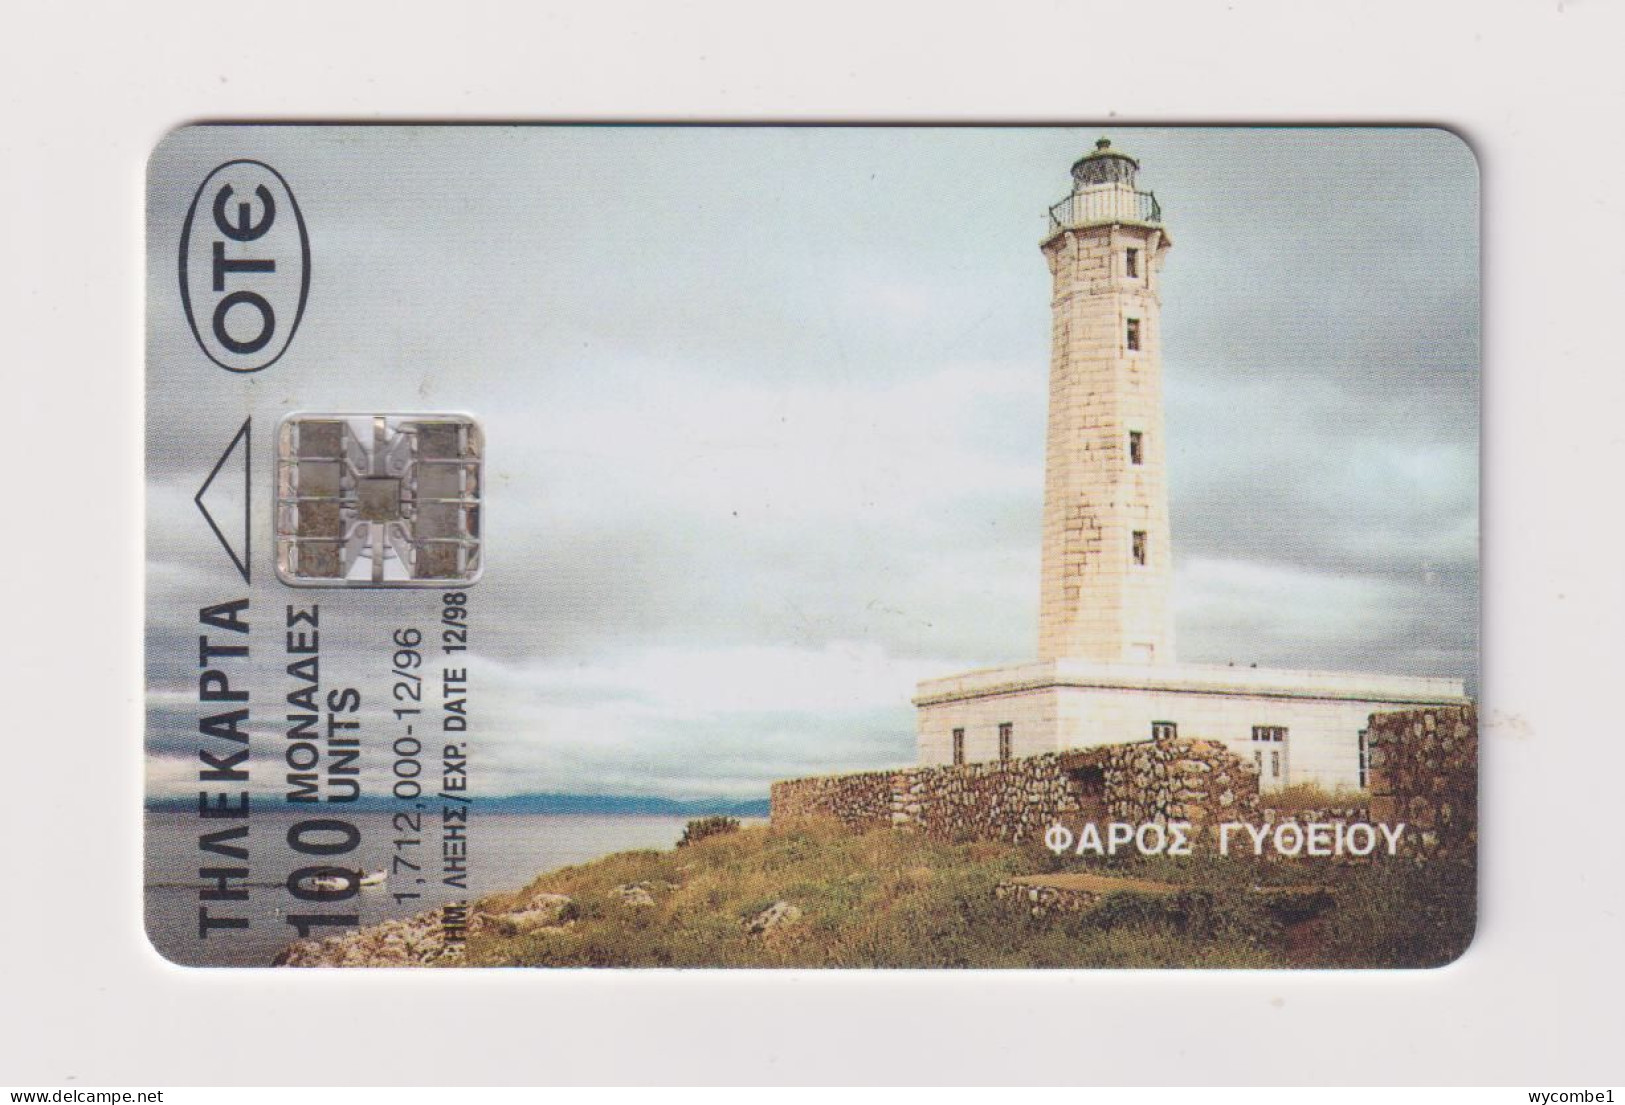 GREECE -  Lighthouse Chip  Phonecard - Griechenland